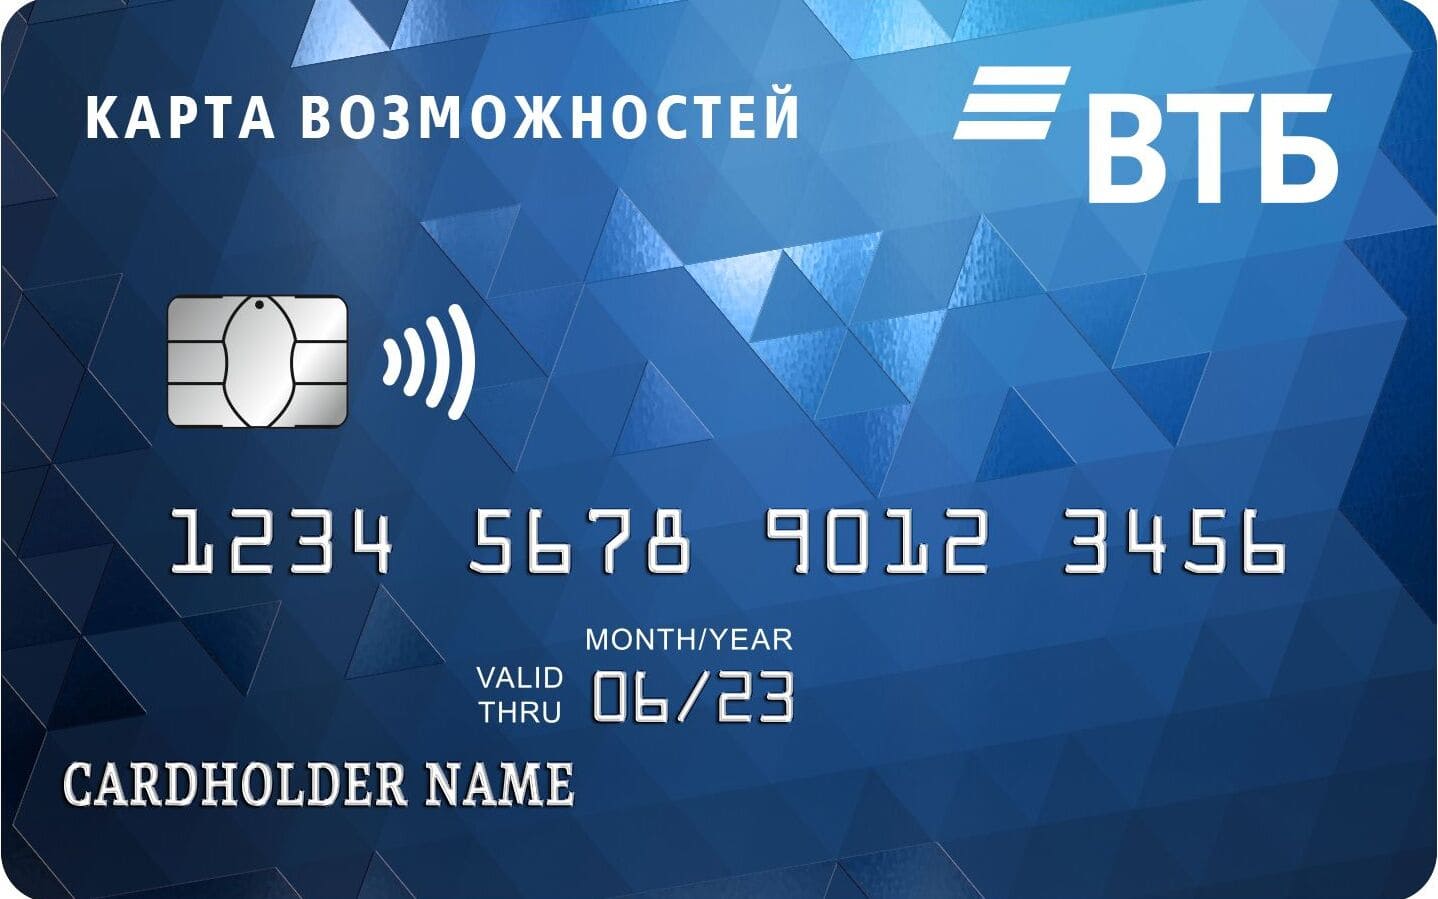 ВТБ-кредитная карта